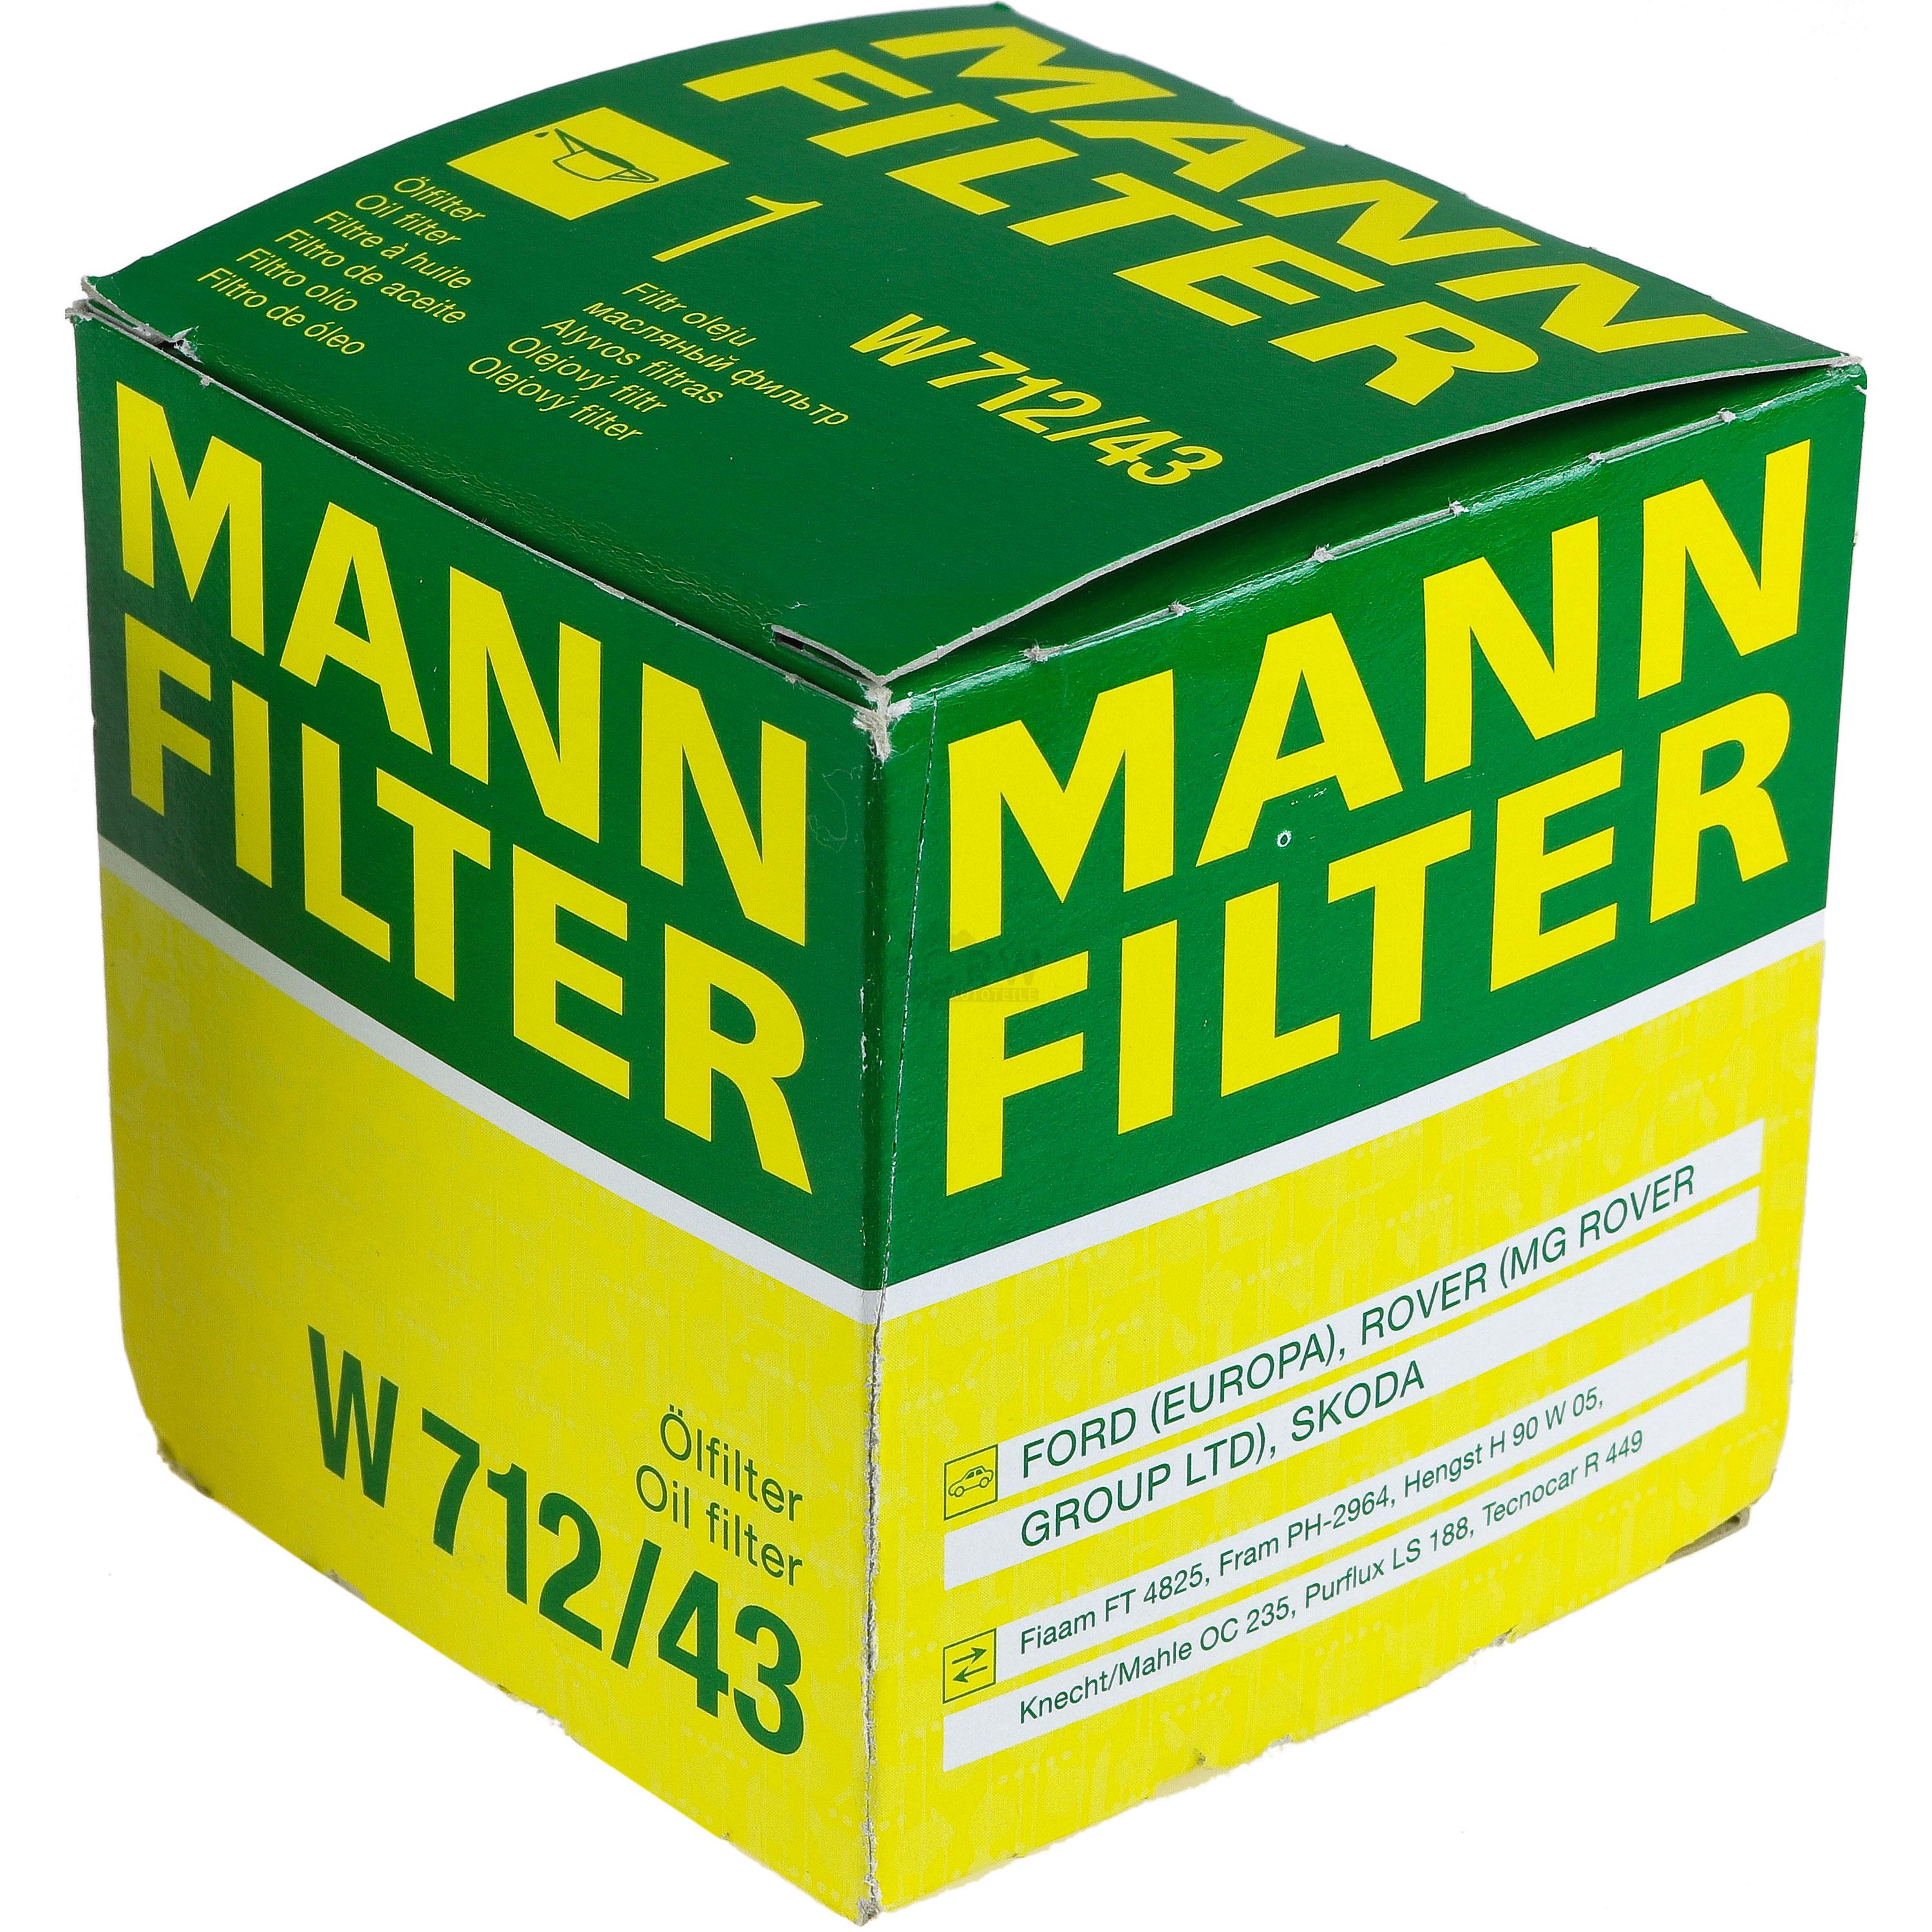 MANN-FILTER Ölfilter W 712/43 Oil Filter